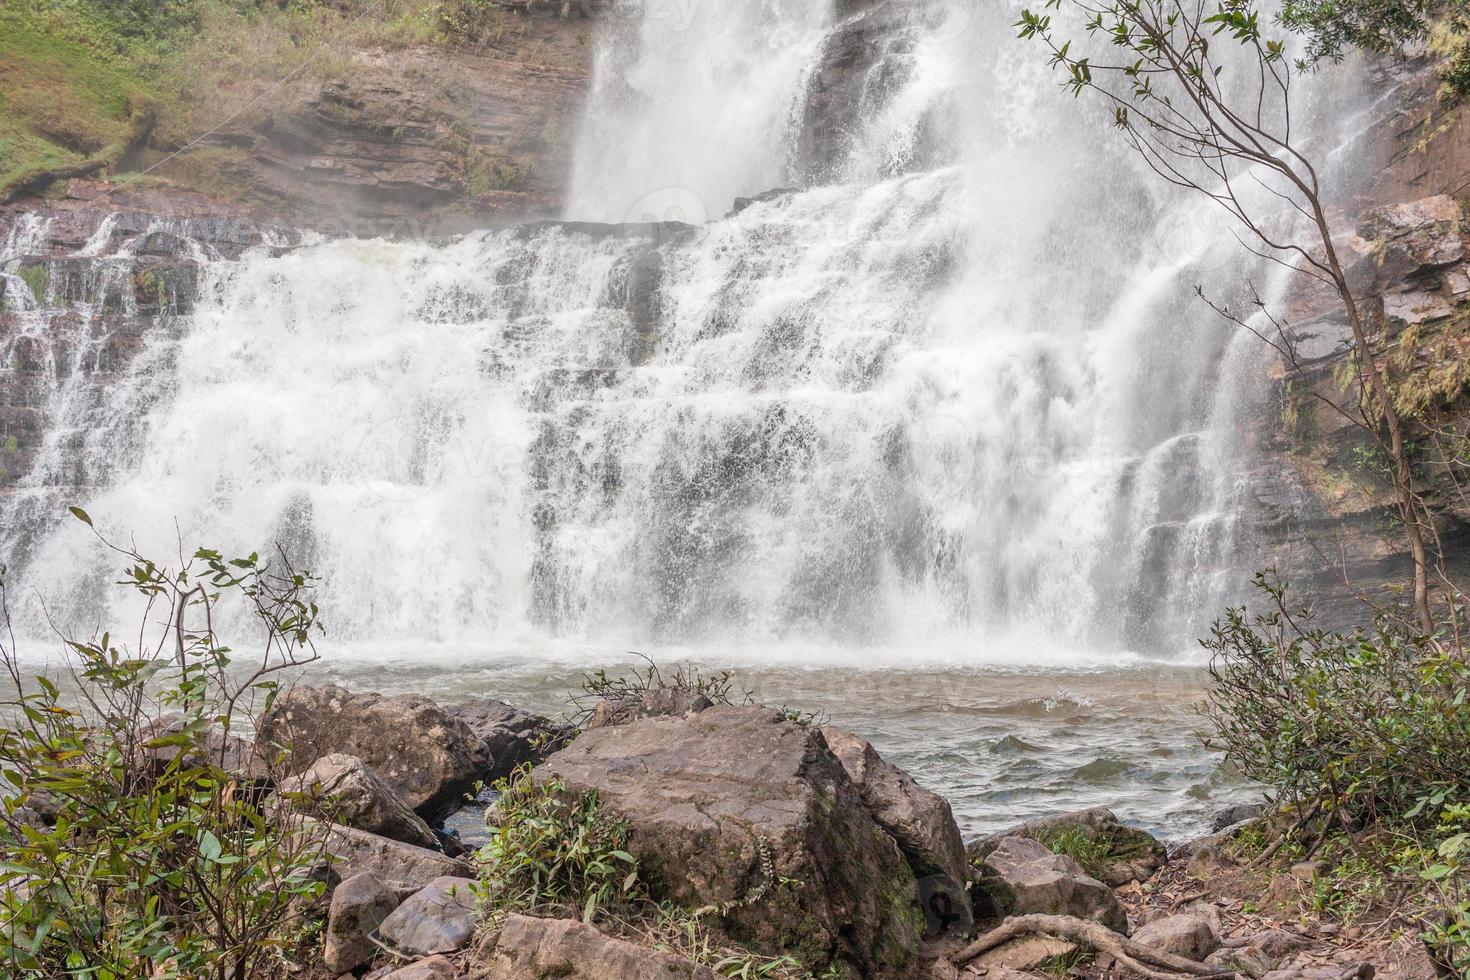 underifrån av vattenfallet känt som veu de noiva längs leden i indaia nära formosa, goias, brasilien foto